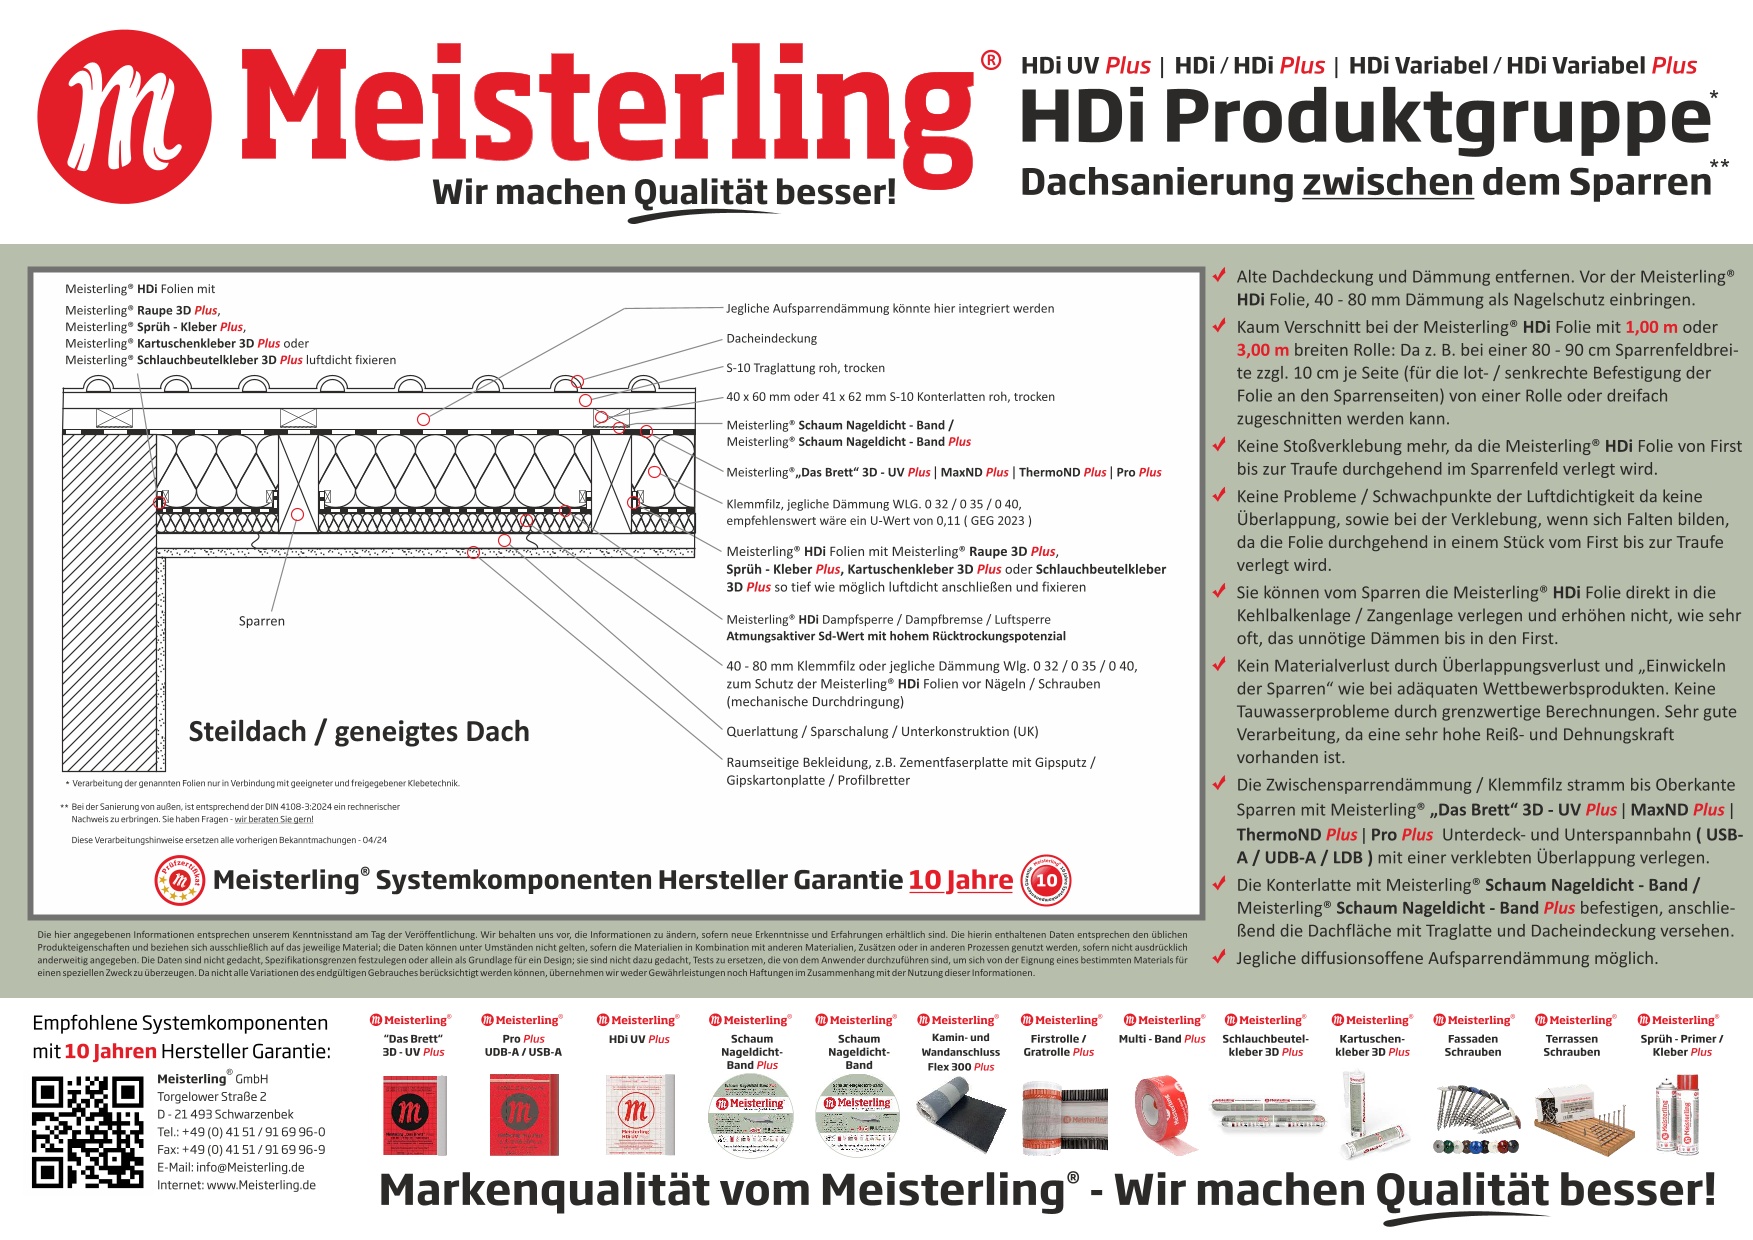 Meisterling HDi + HDi Variabel - Dachsanierung zwischen dem Sparren